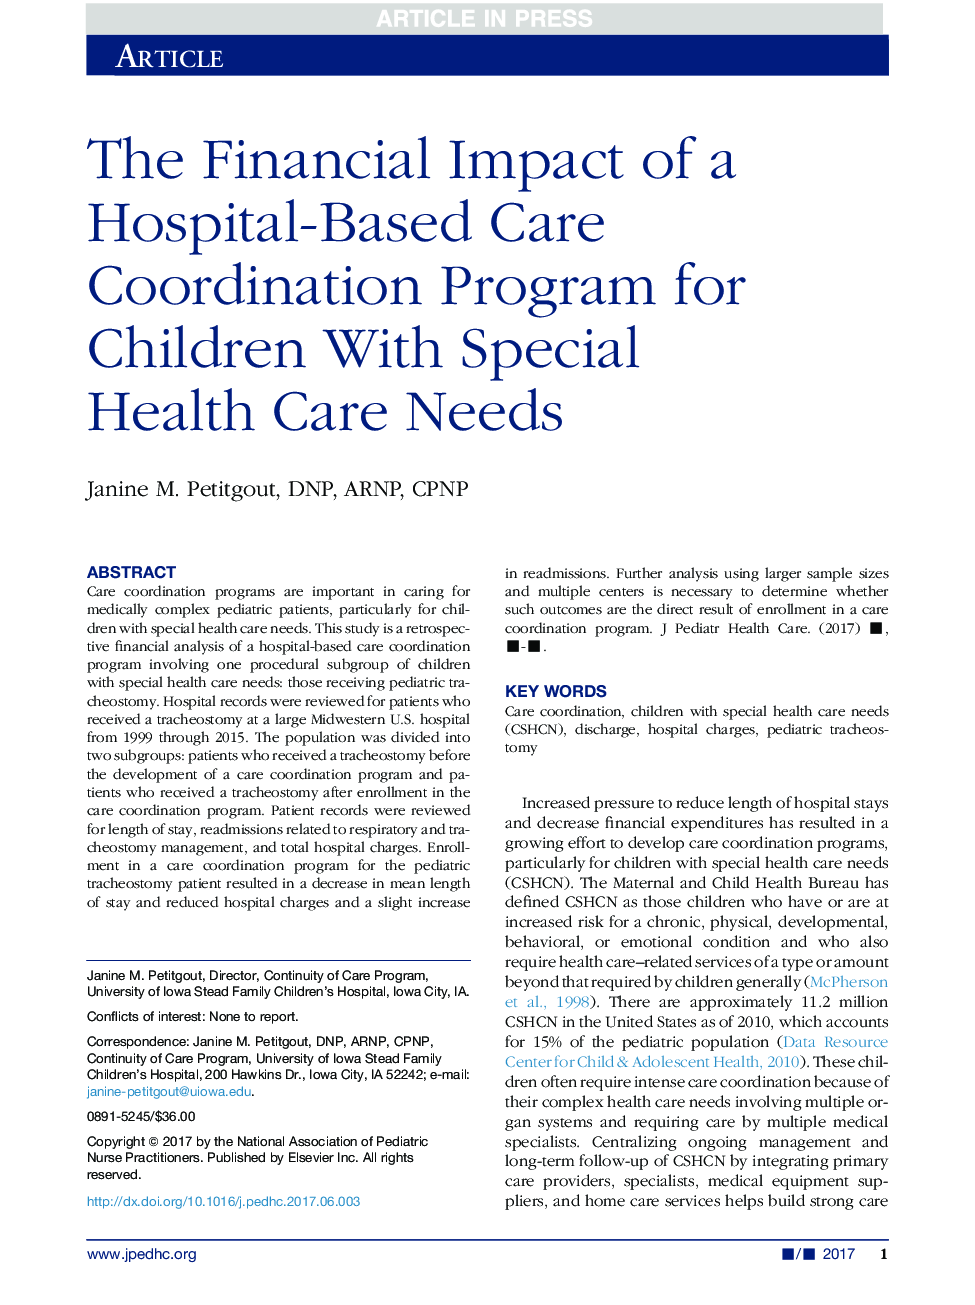 تأثیر مالی یک برنامه هماهنگی مراقبت از بیمارستان برای کودکان با نیازهای ویژه مراقبت های بهداشتی 